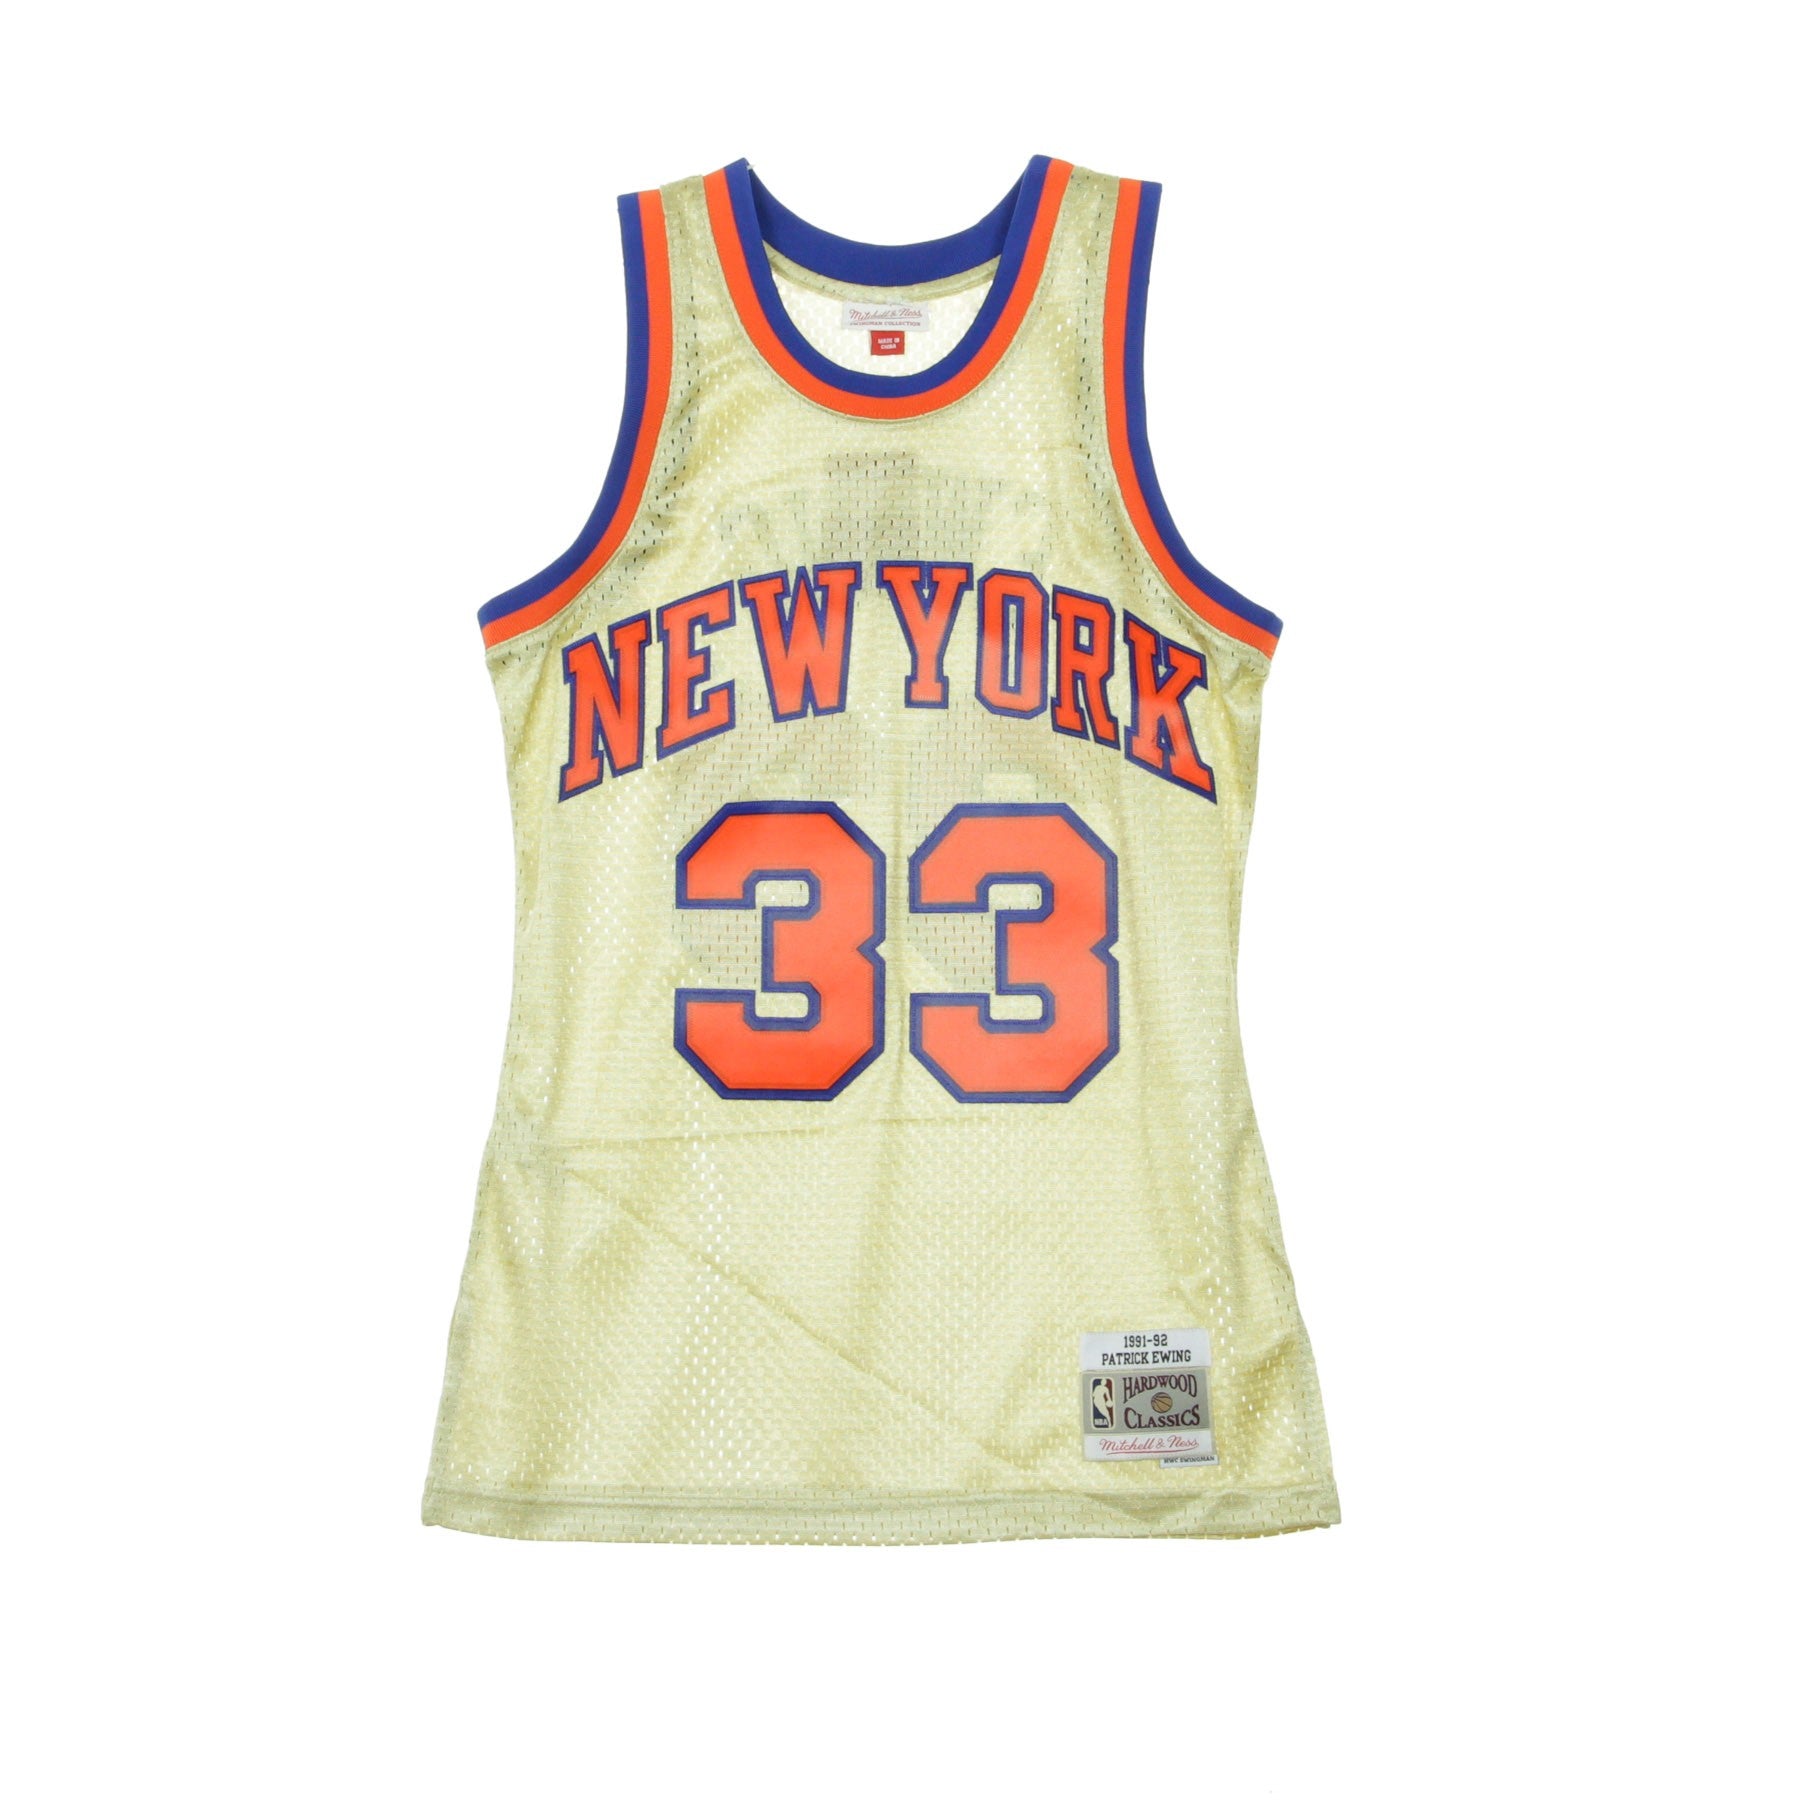 Mitchell & Ness, Canotta Basket Uomo Nba Swimgman Jersey Patrick Ewing No.33 1991-92 Neykni Gold, Gold/otc